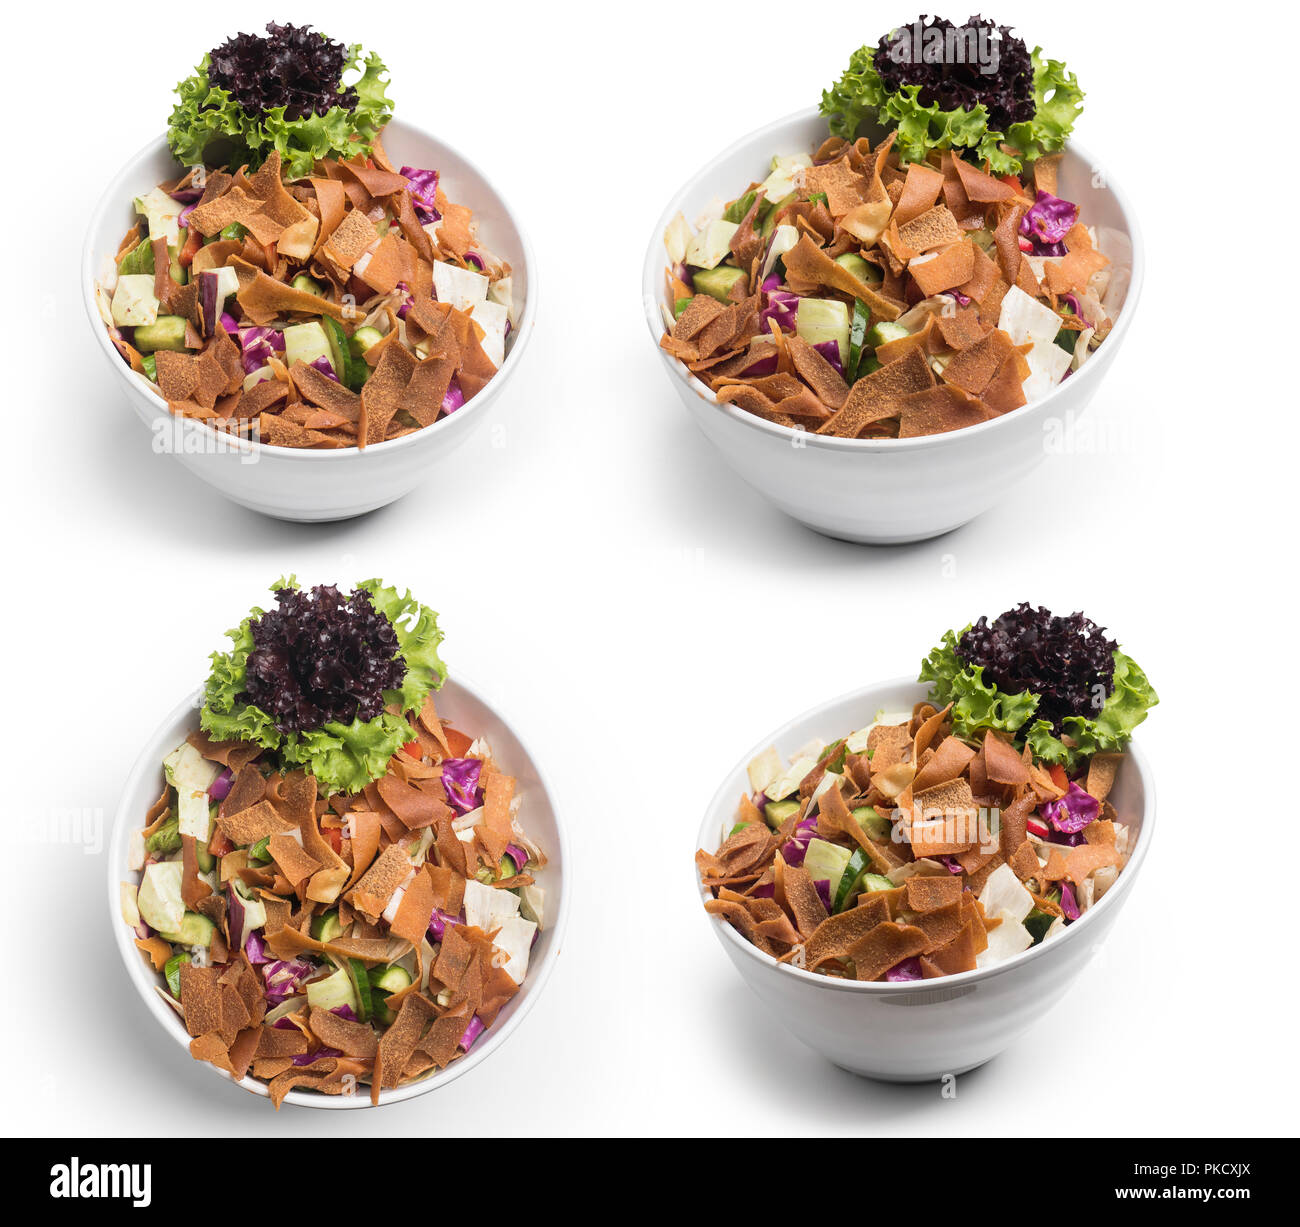 Fattoush Salat, Satz von libanesischen Salat, Fattouch, auf weißem Hintergrund, Clipping Path enthalten Stockfoto